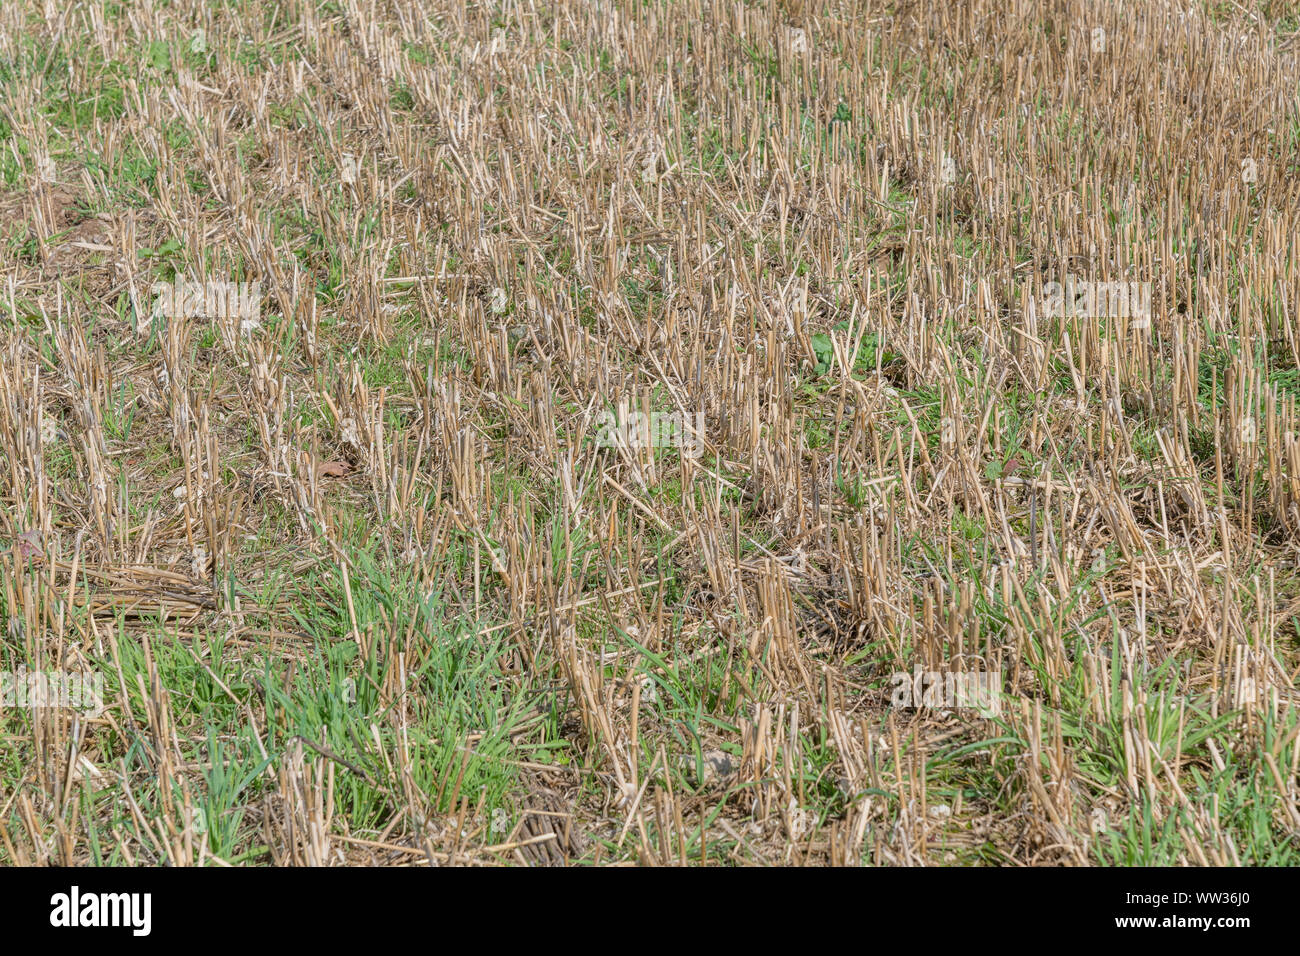 Herbst stoppeln Feld nach der geernteten Getreide (Hafer Stroh hier). Metapher Ernährungssicherheit/Anbau von Nahrungsmitteln, die britische Landwirtschaft, landwirtschaftliche Zyklus. Stockfoto